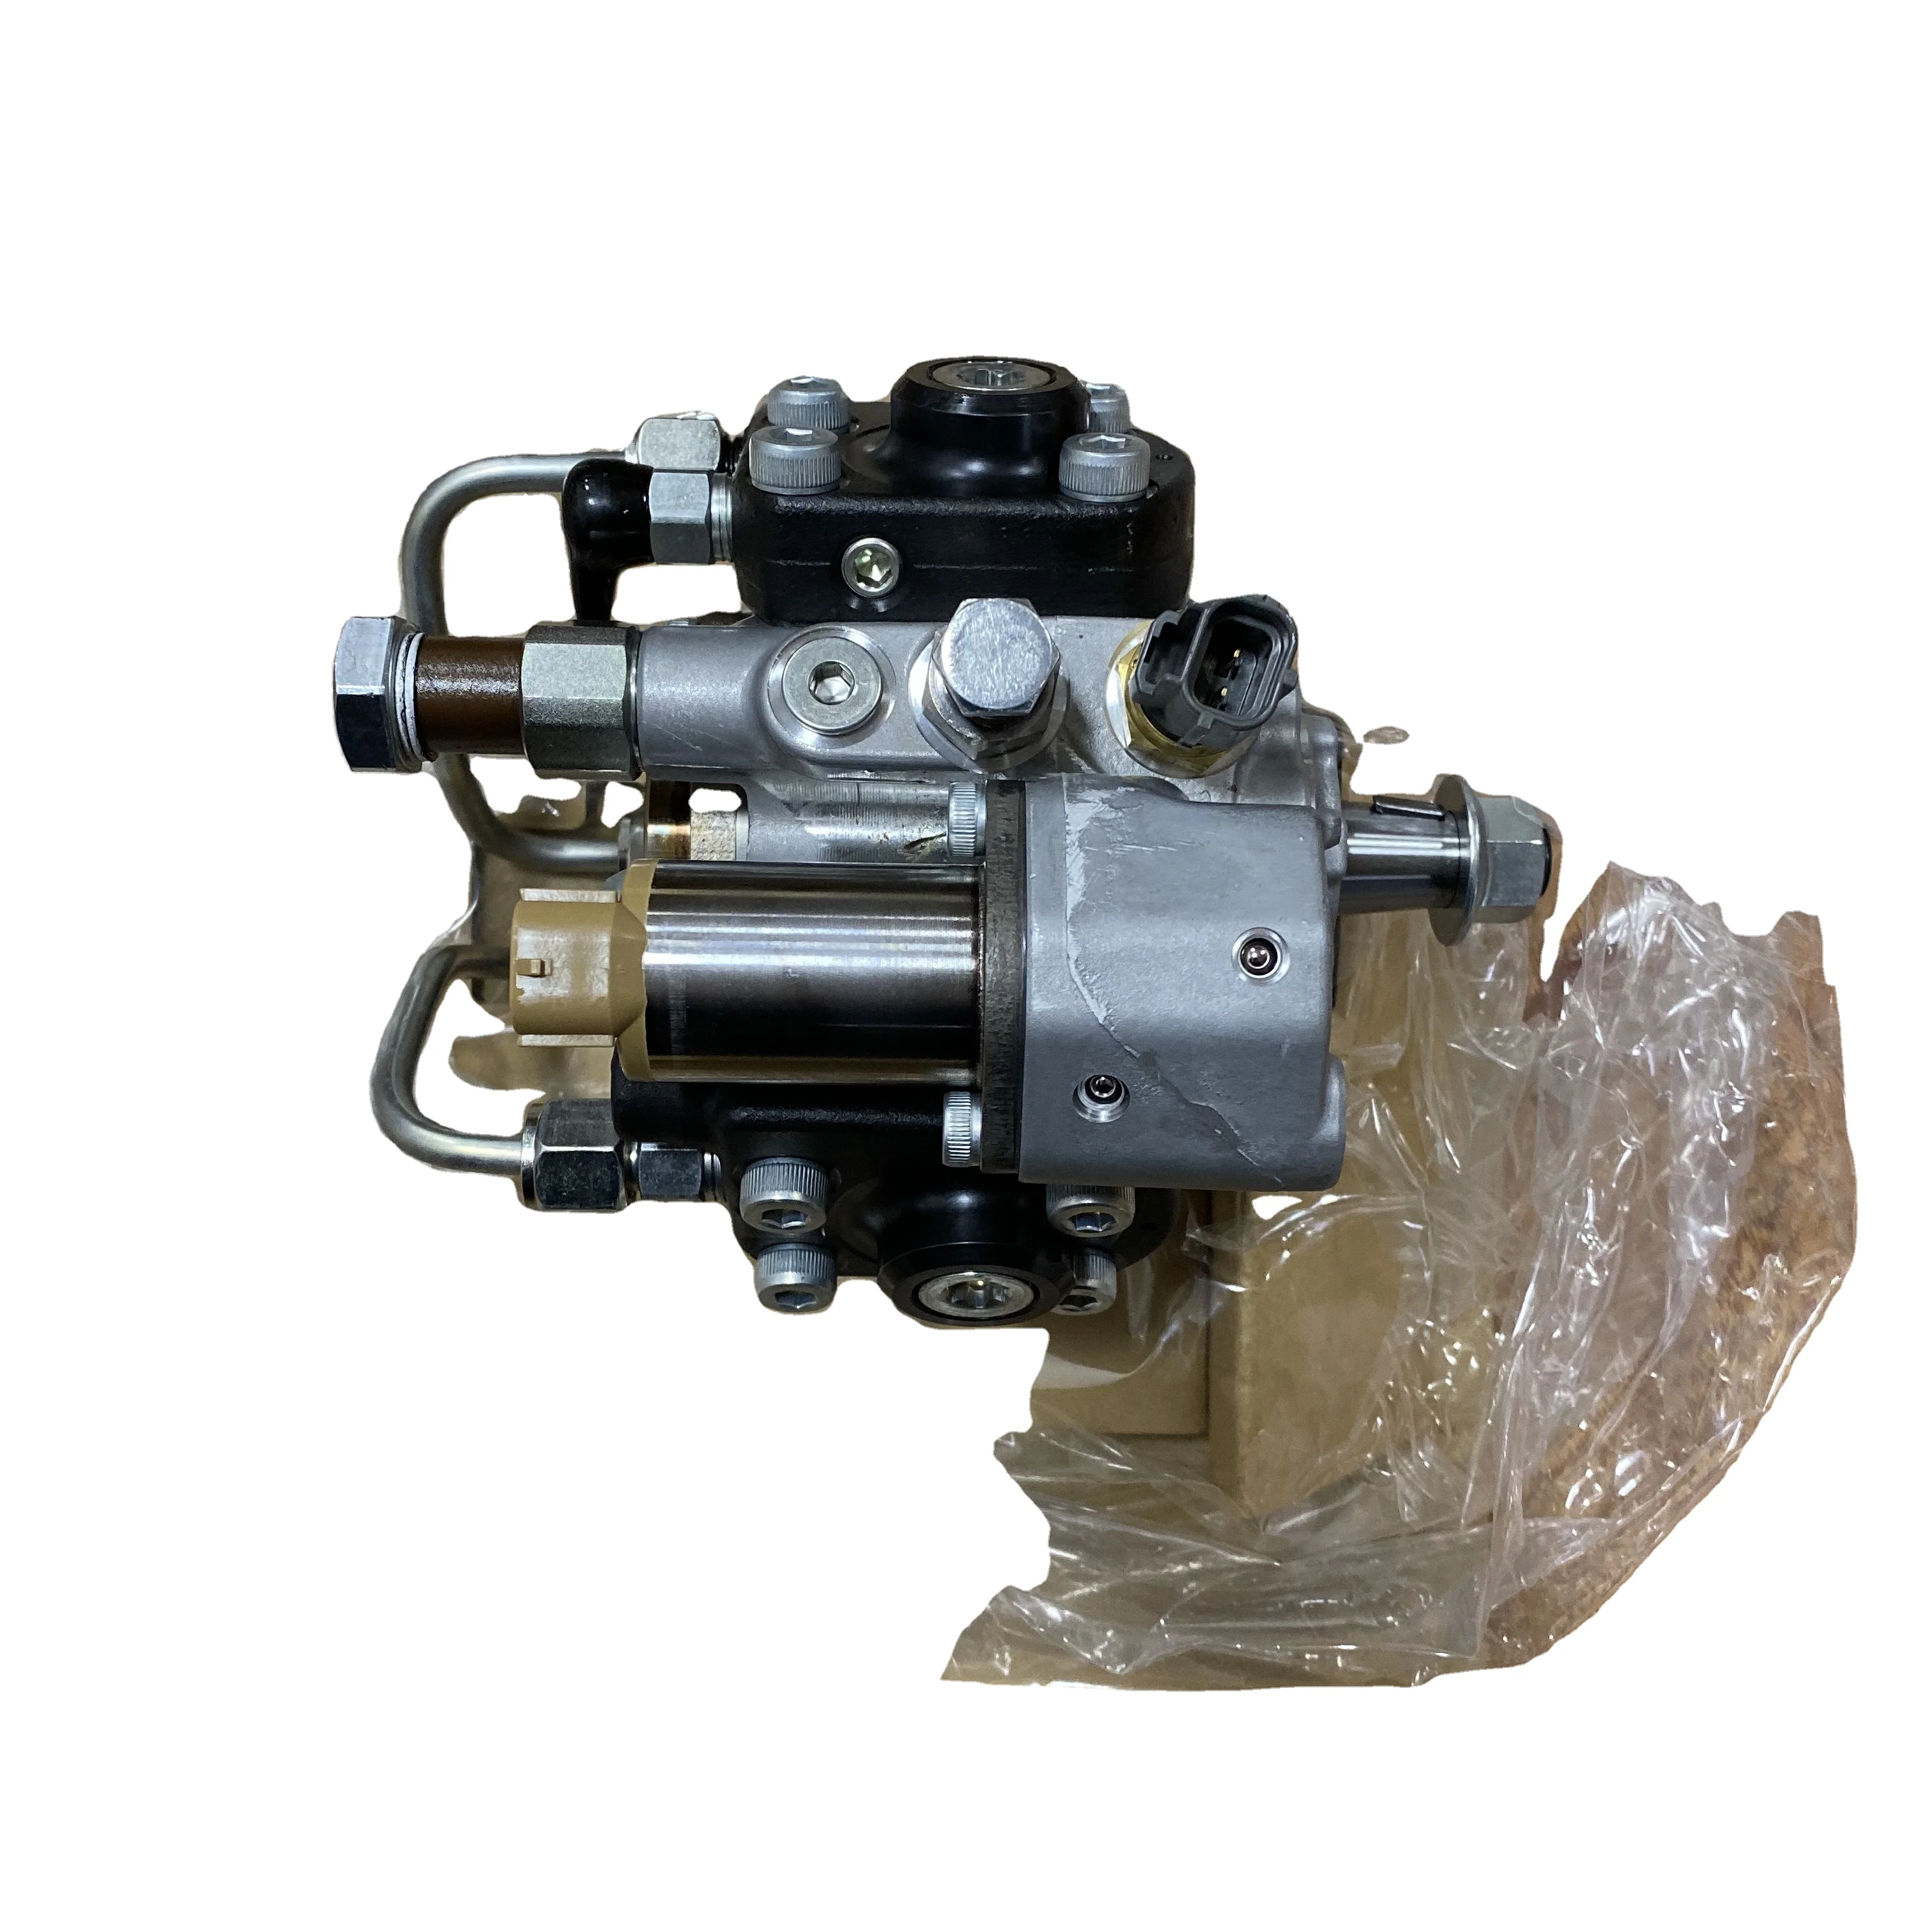 Топливный насос экскаватора SK350-8 Топливный насос Высокого давления SK350